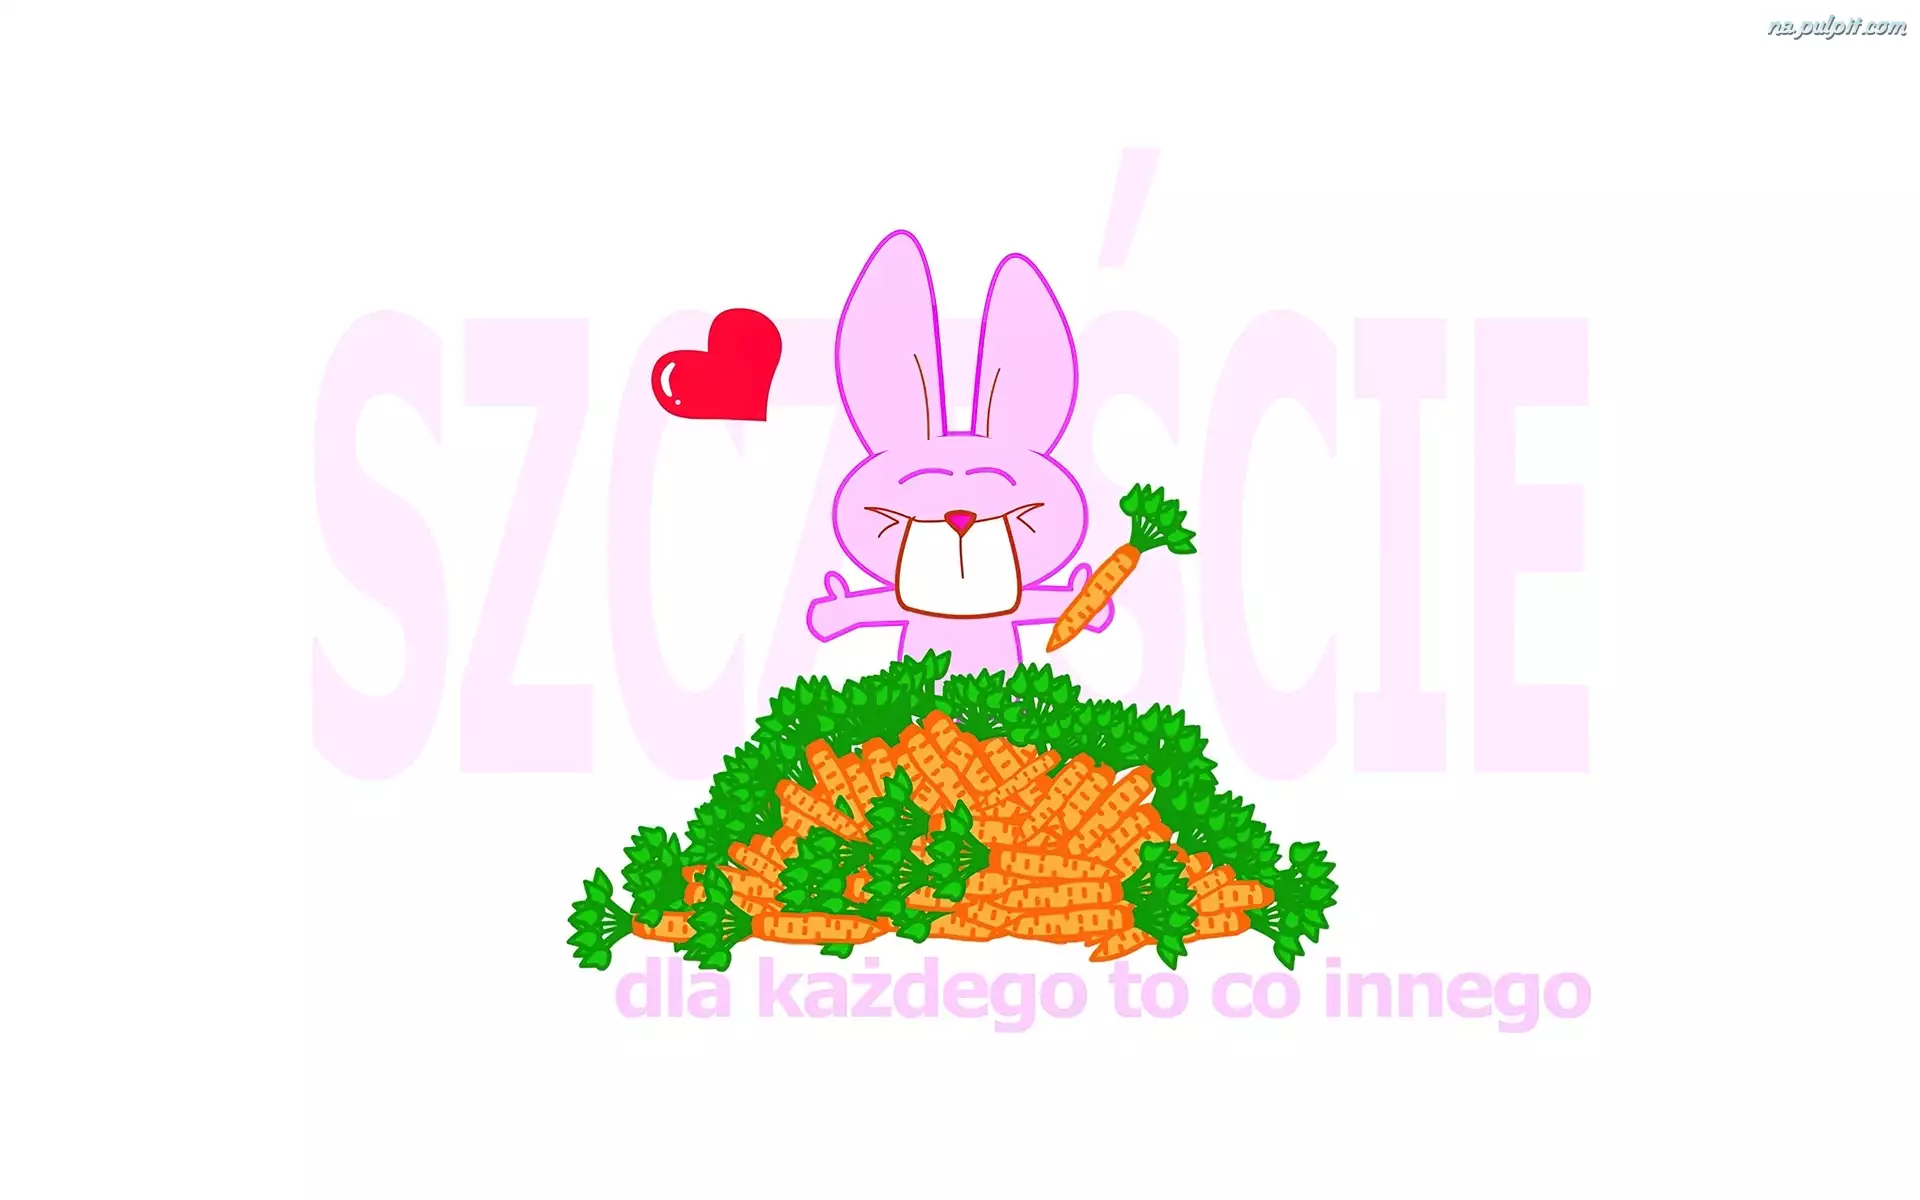 szczęście, Różowy, marchewki, królik, napis